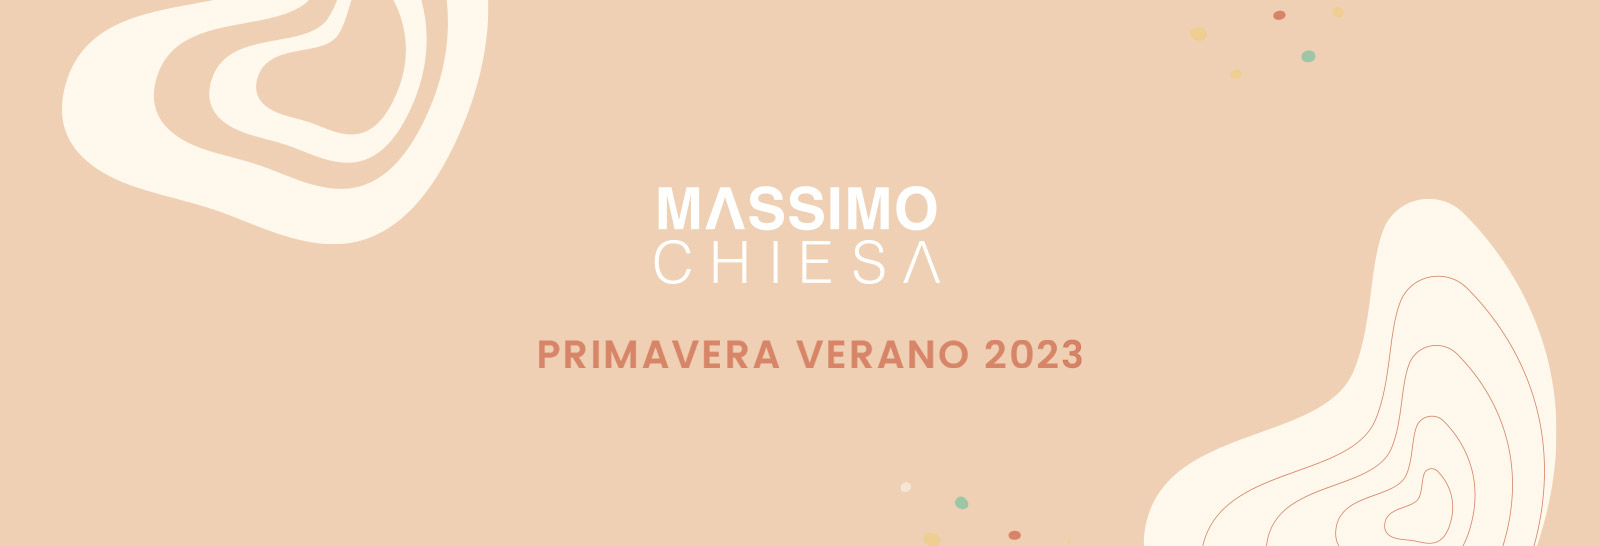 Massimo Chiesa 2023